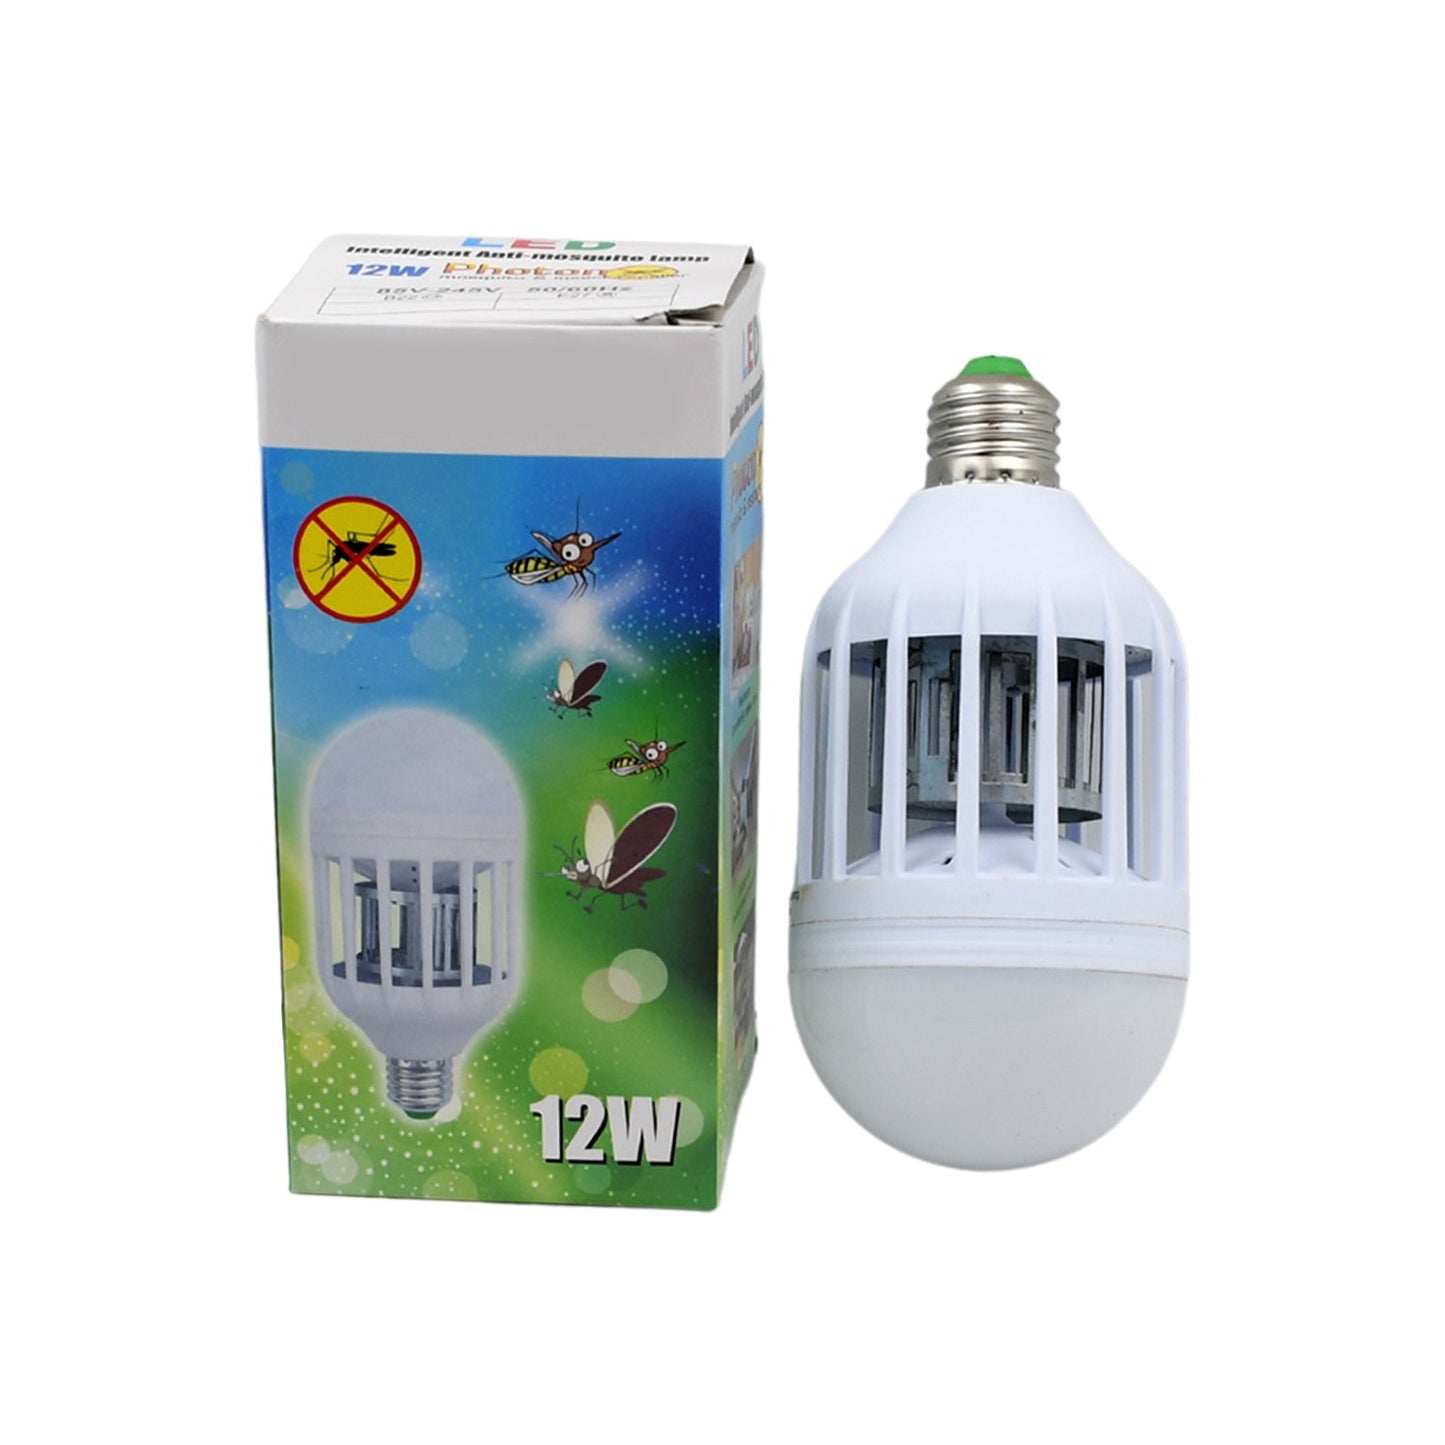 6898 12W Mosquito Killer Lamp E27 Summer Moths Flying Insects Led Zapper Mosquito Killer Lamp Light Bulb Household: 12W